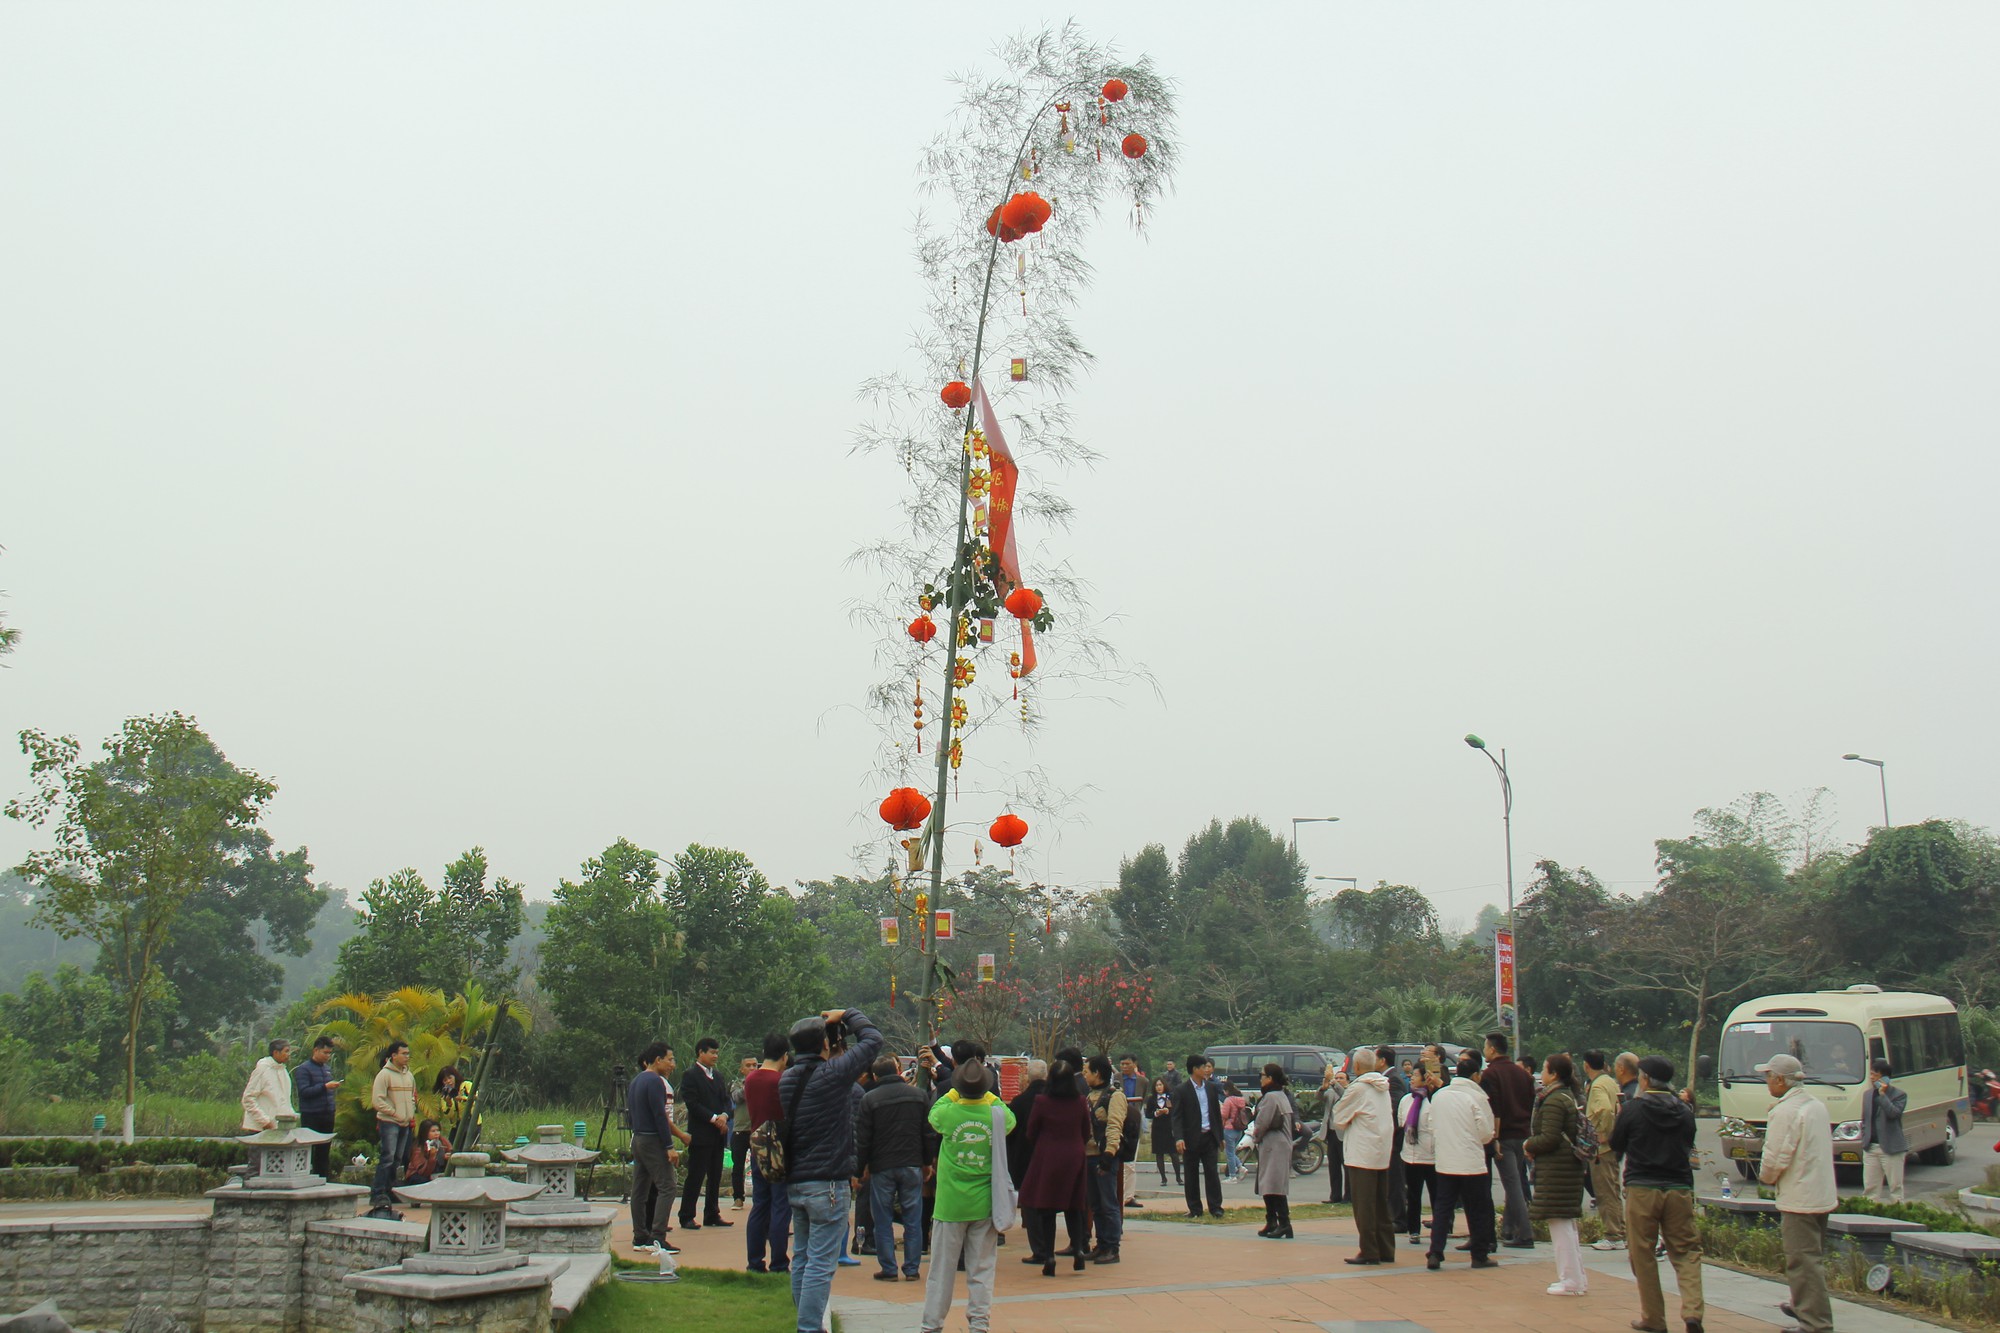 Cây Nêu là biểu trưng cho sự may mắn, bình an và tinh thần yêu nước của người Việt ta